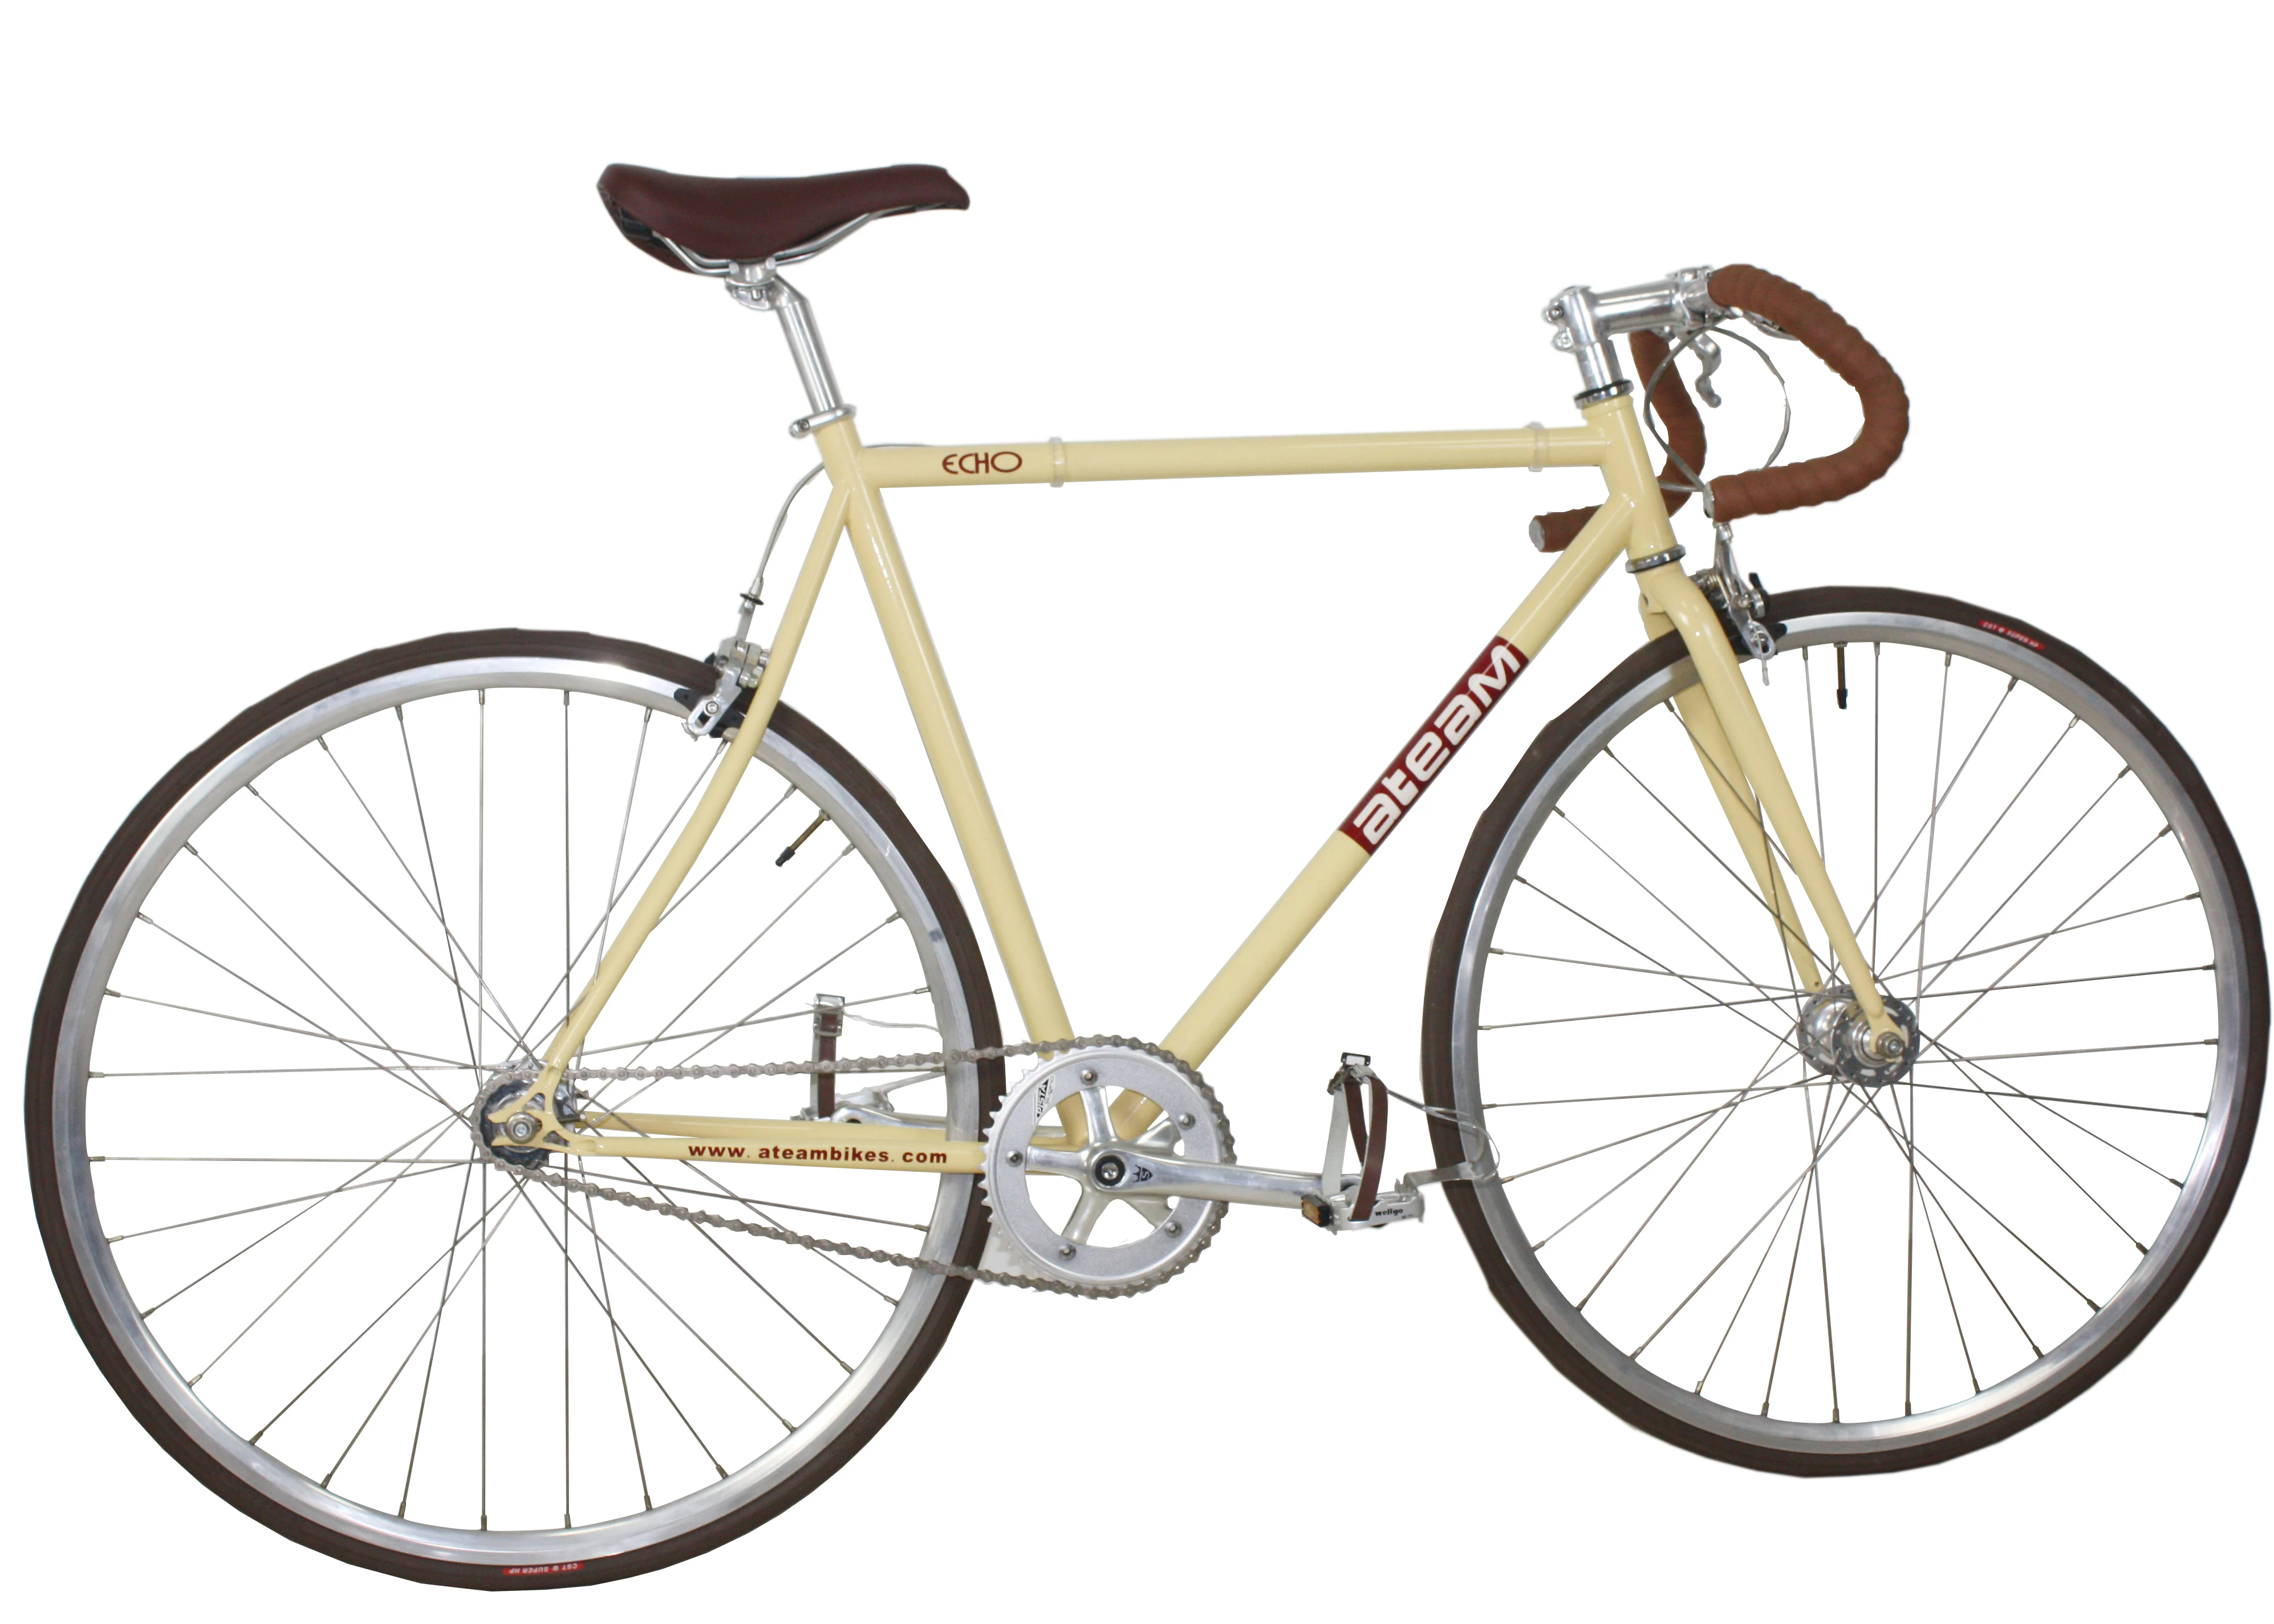 retro fixie bike